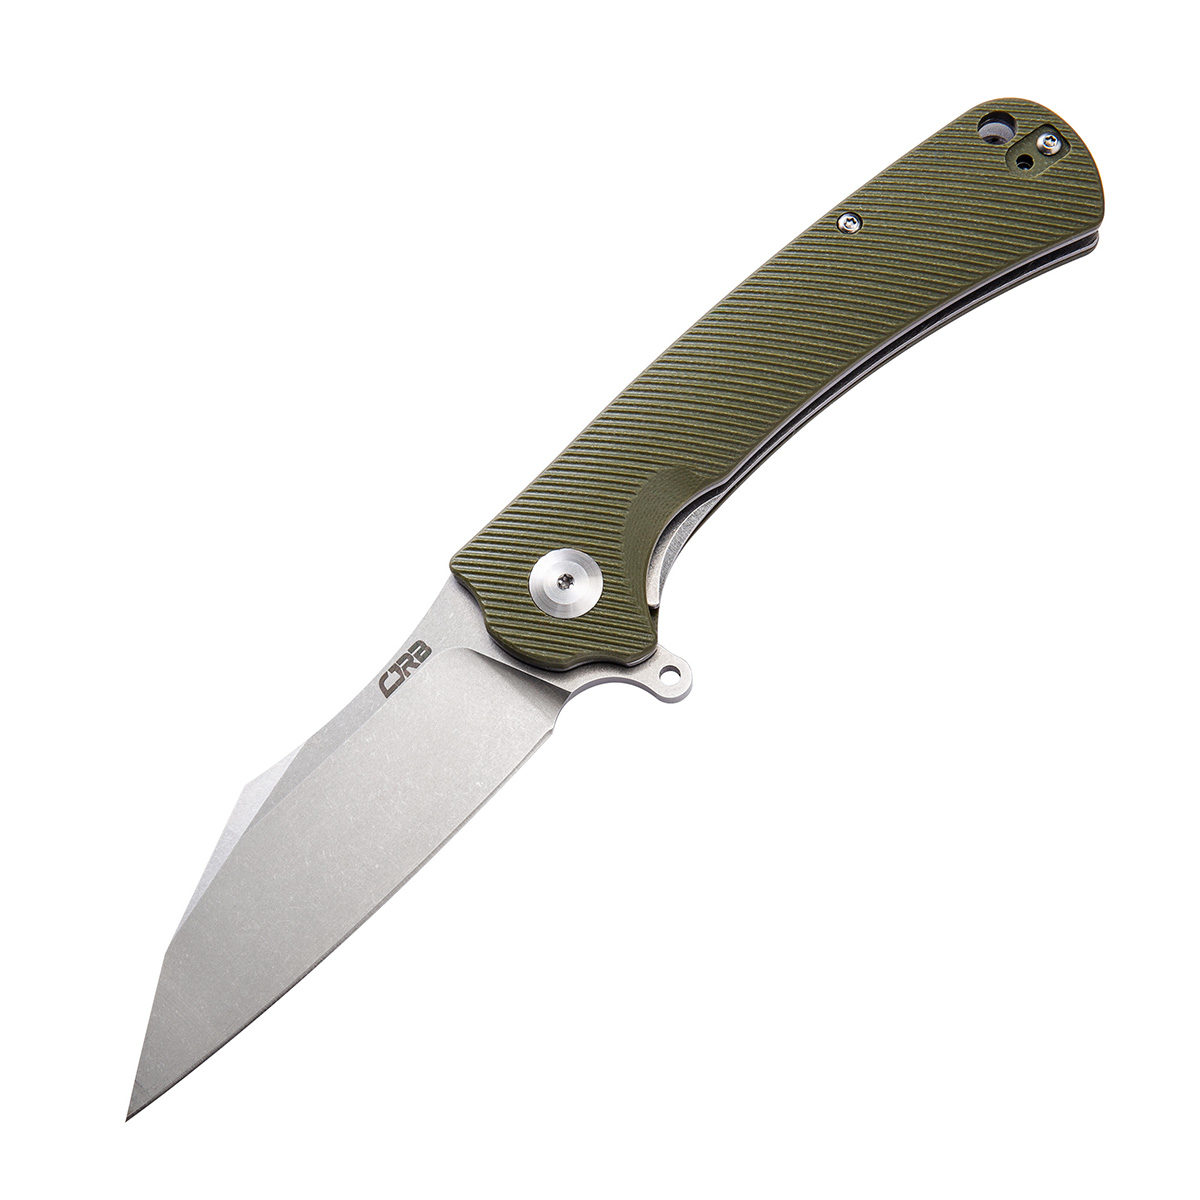 Складной нож CJRB Talla, сталь D2, рукоять G10, зеленый, Бренды, CJRB Cutlery